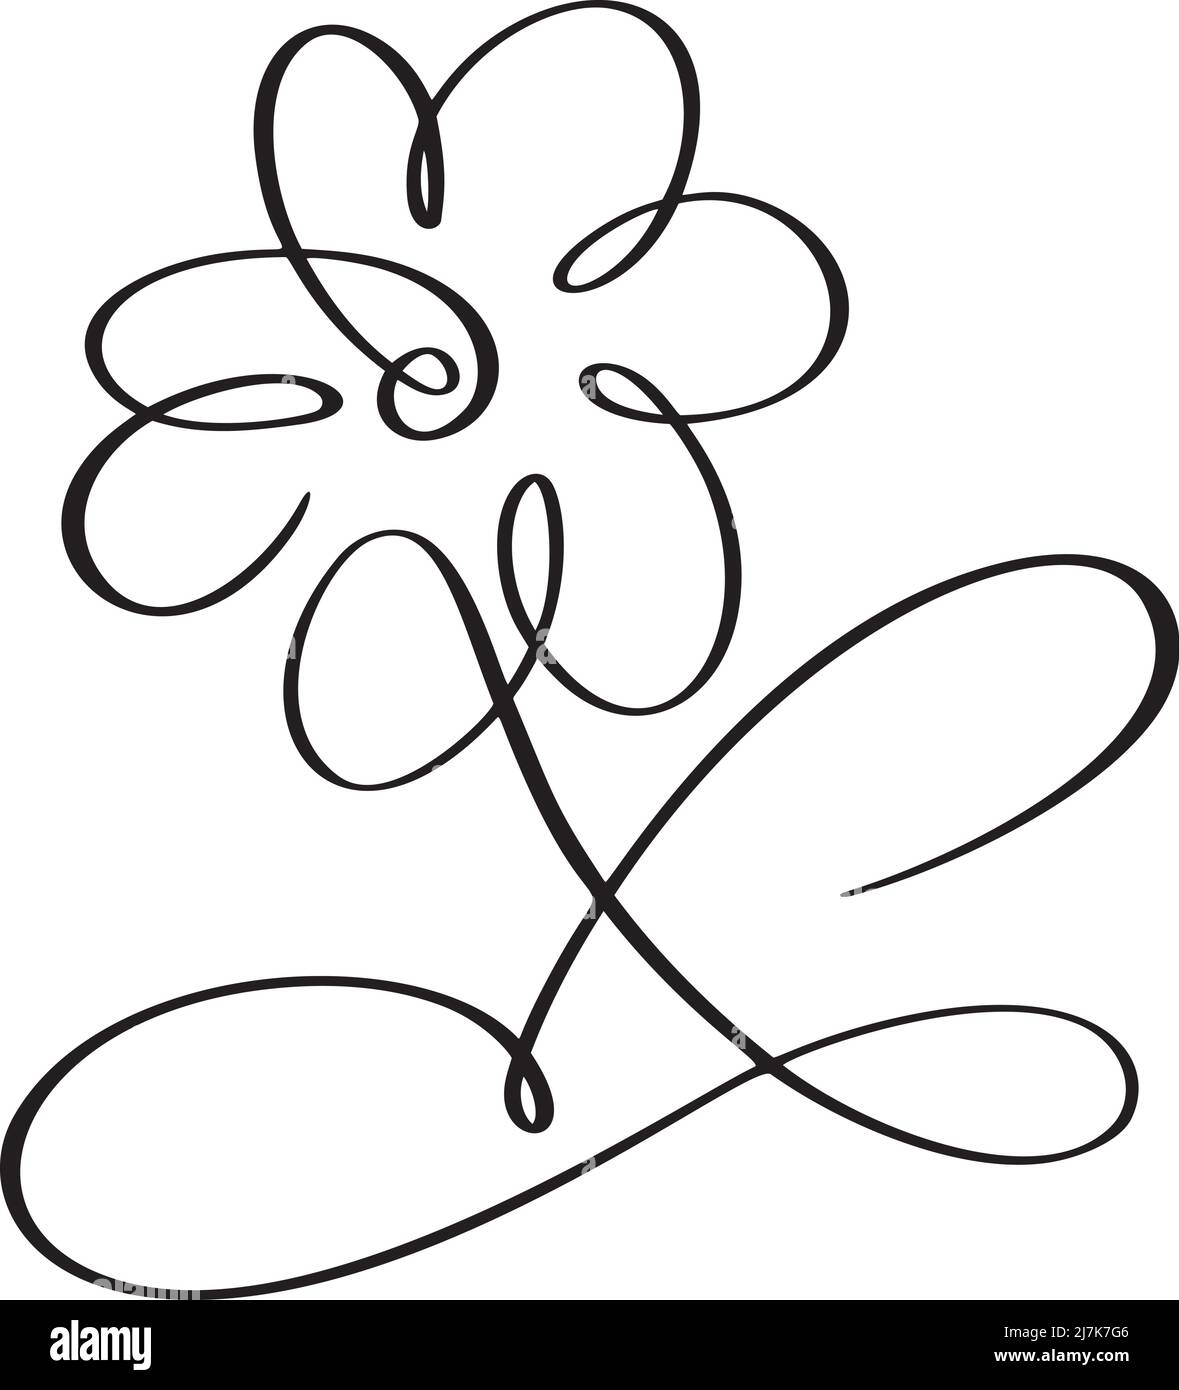 Dessin vectoriel à la main dessin d'une ligne de fleur. Design fleuri contemporain et tendance, idéal pour les murs, les imprimés, les médias sociaux et les affiches Illustration de Vecteur